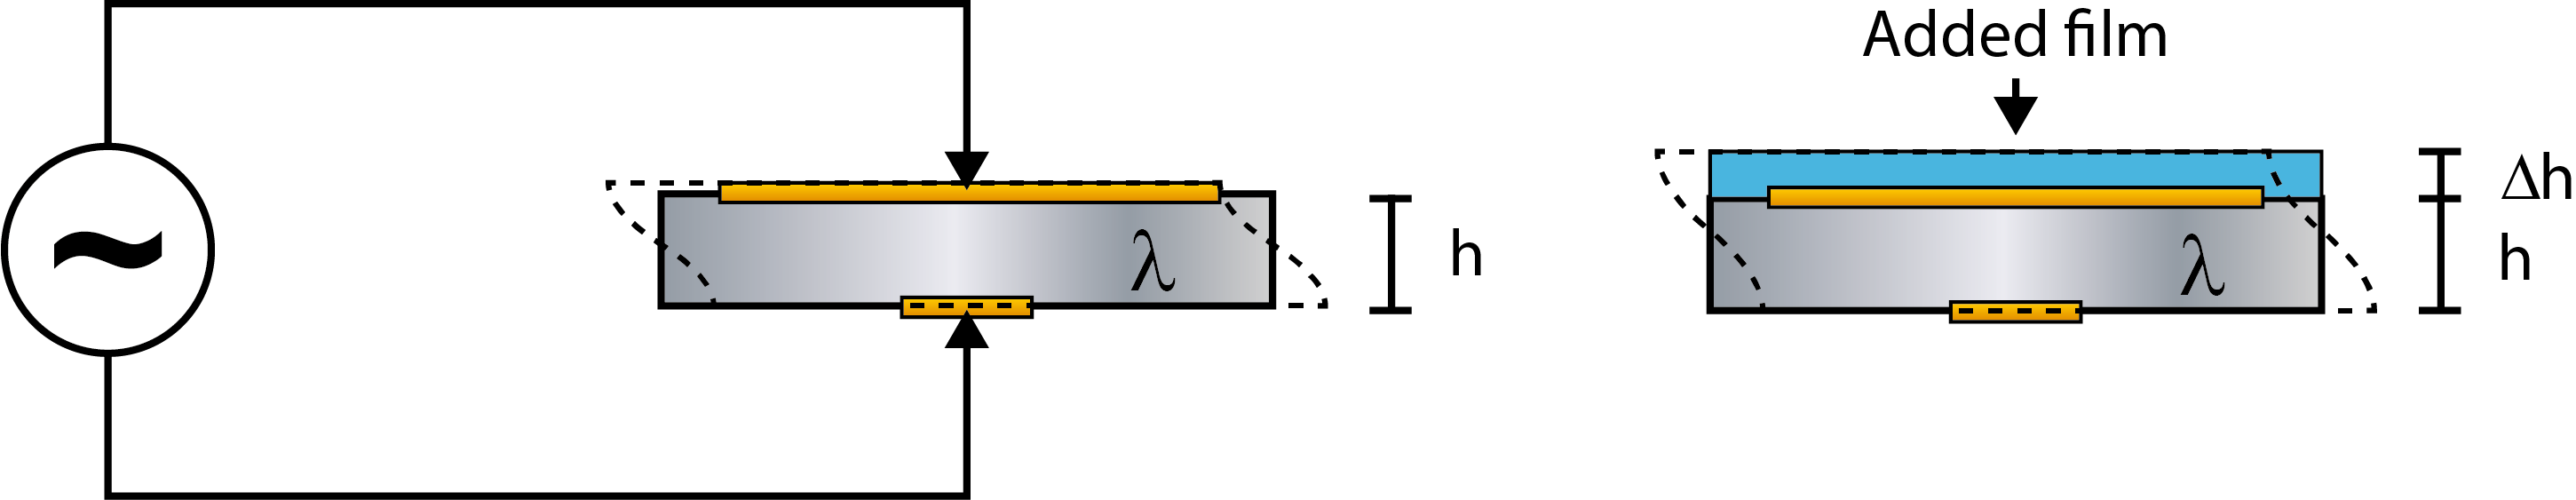 Sauerbrey equation-1